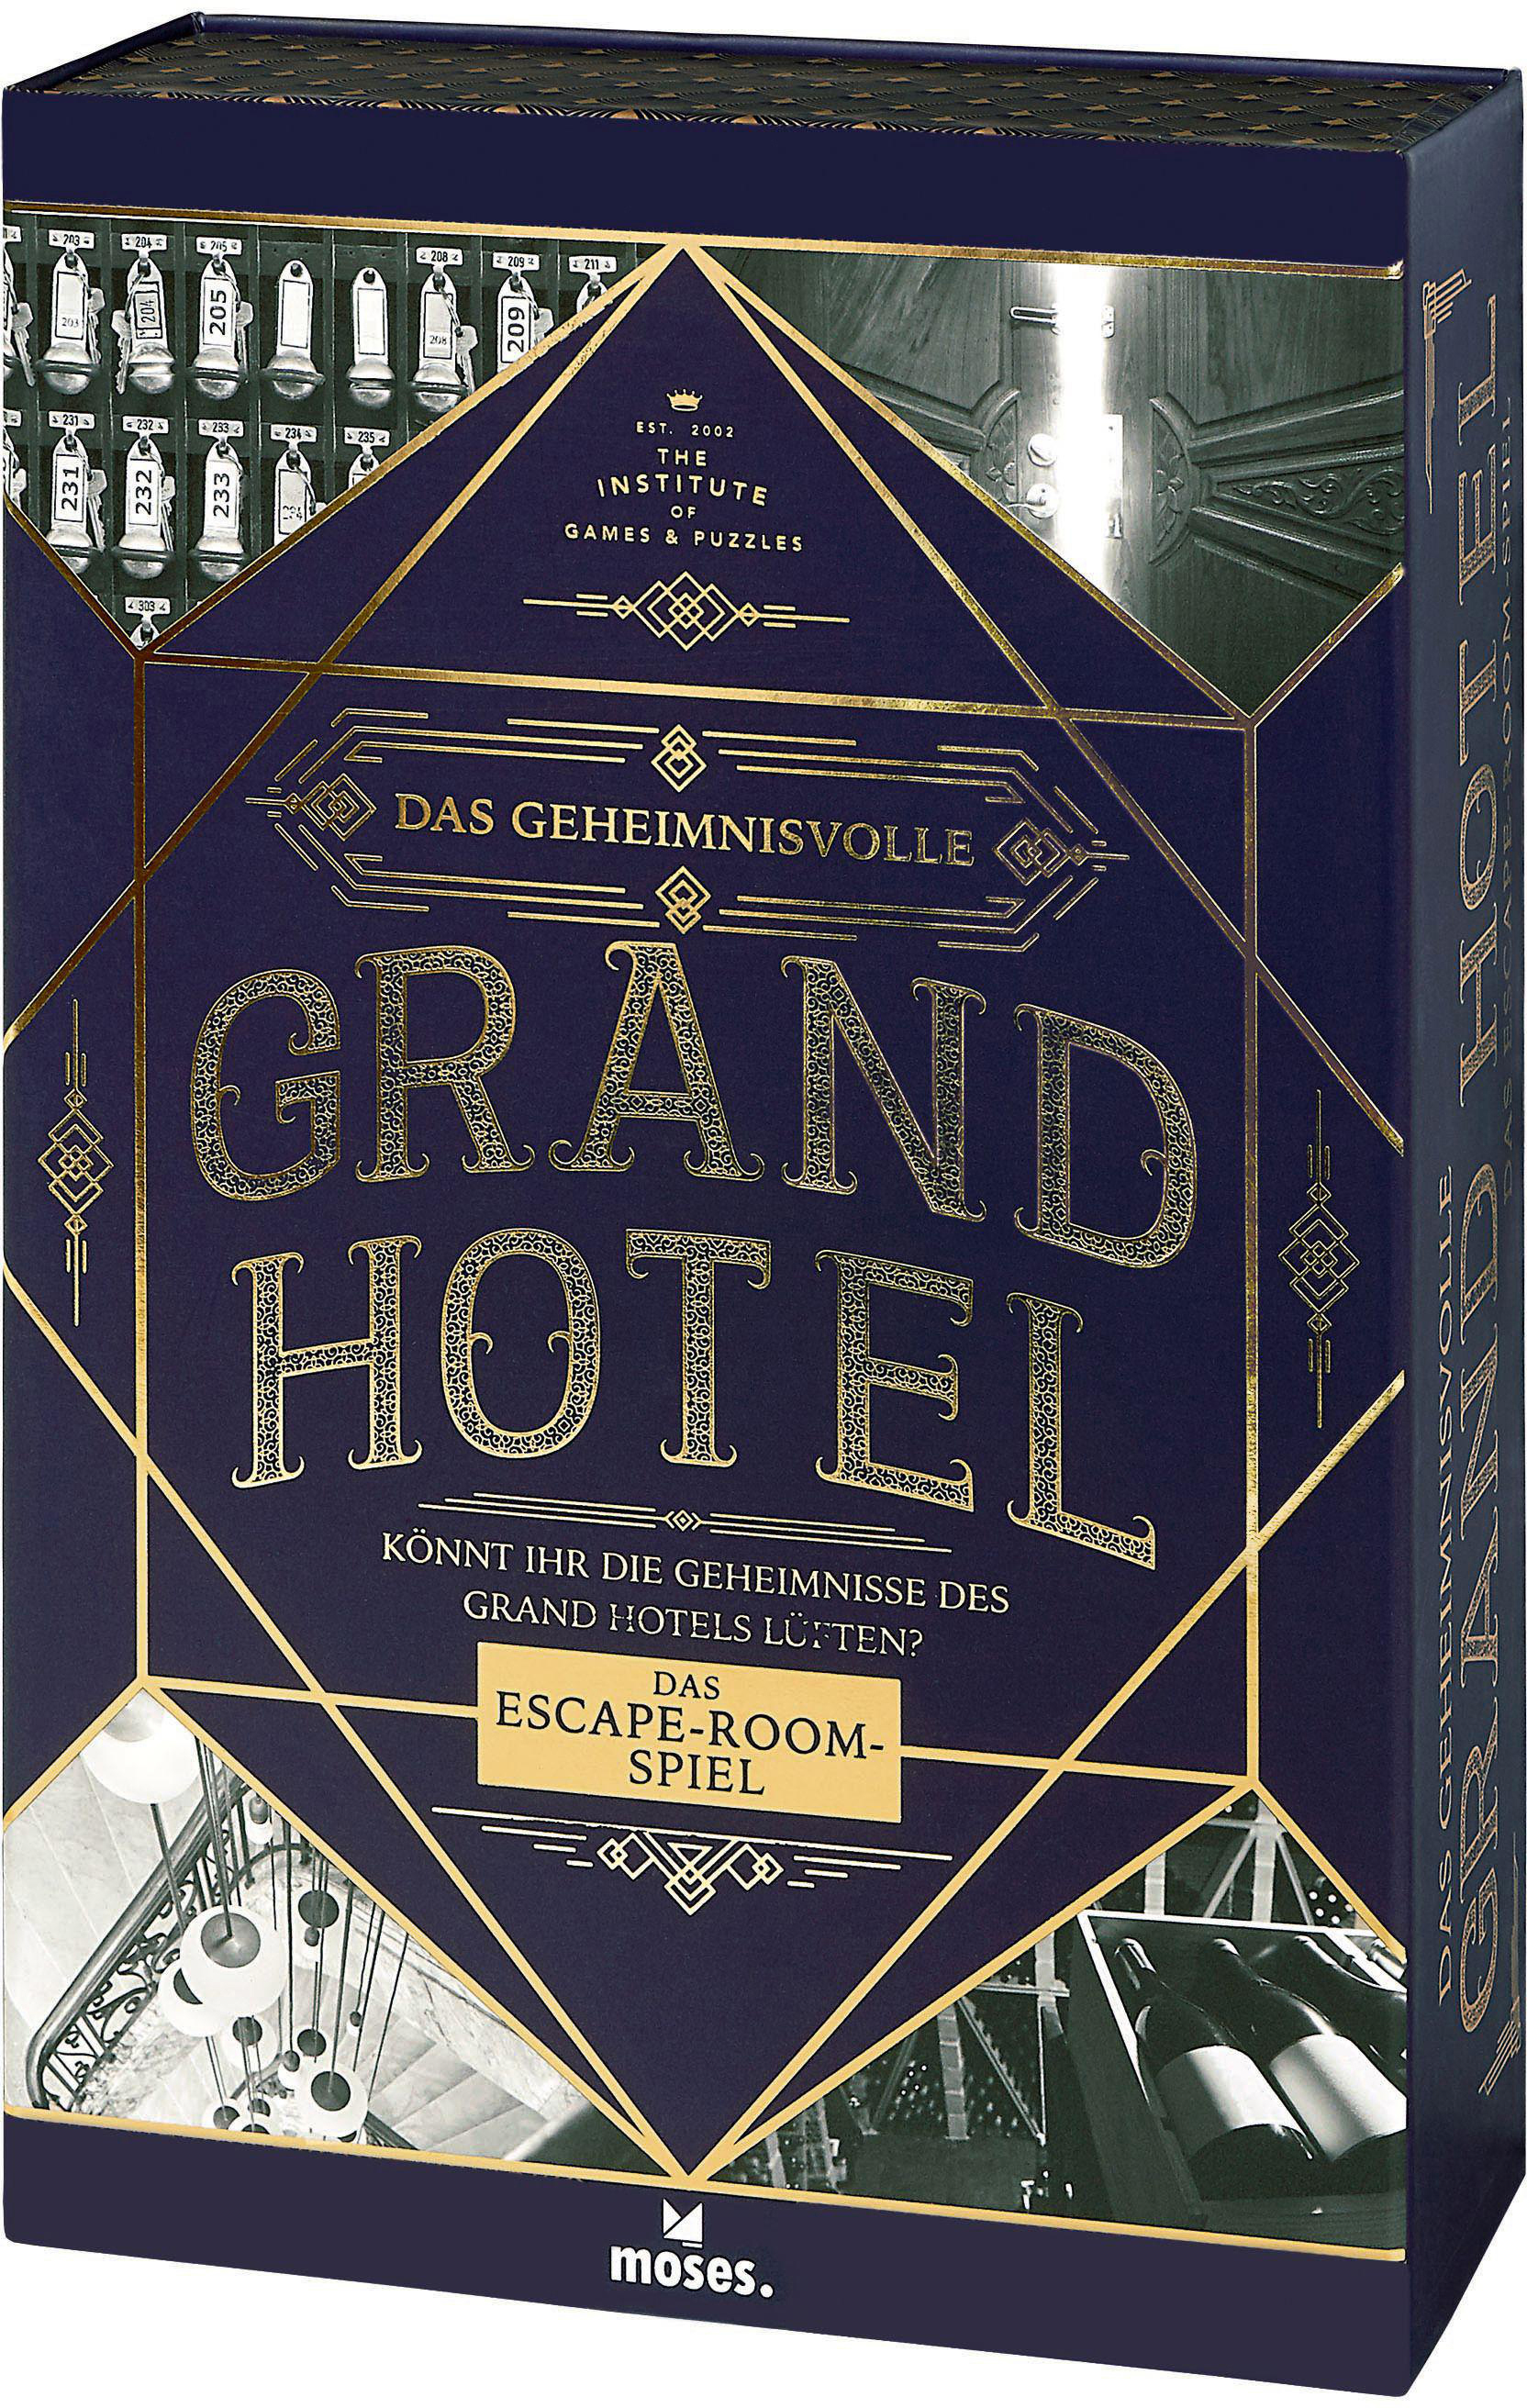 Grand Das Gesellschaftsspiel Hotel geheimnisvolle MOSES. Mehrfarbig